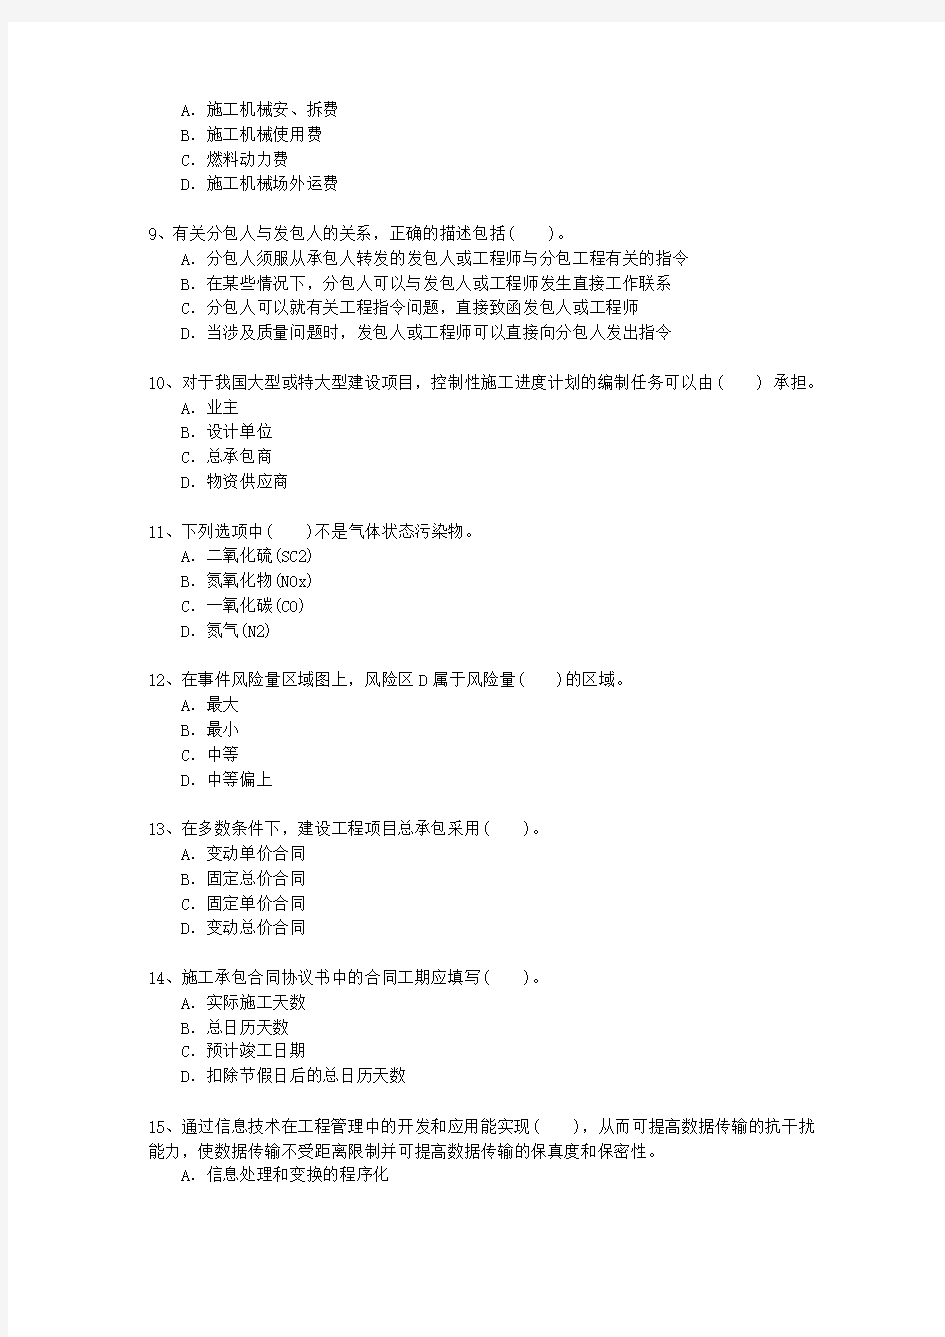 2010三级四川省建造师法规重点资料最新考试题库(完整版)_图文